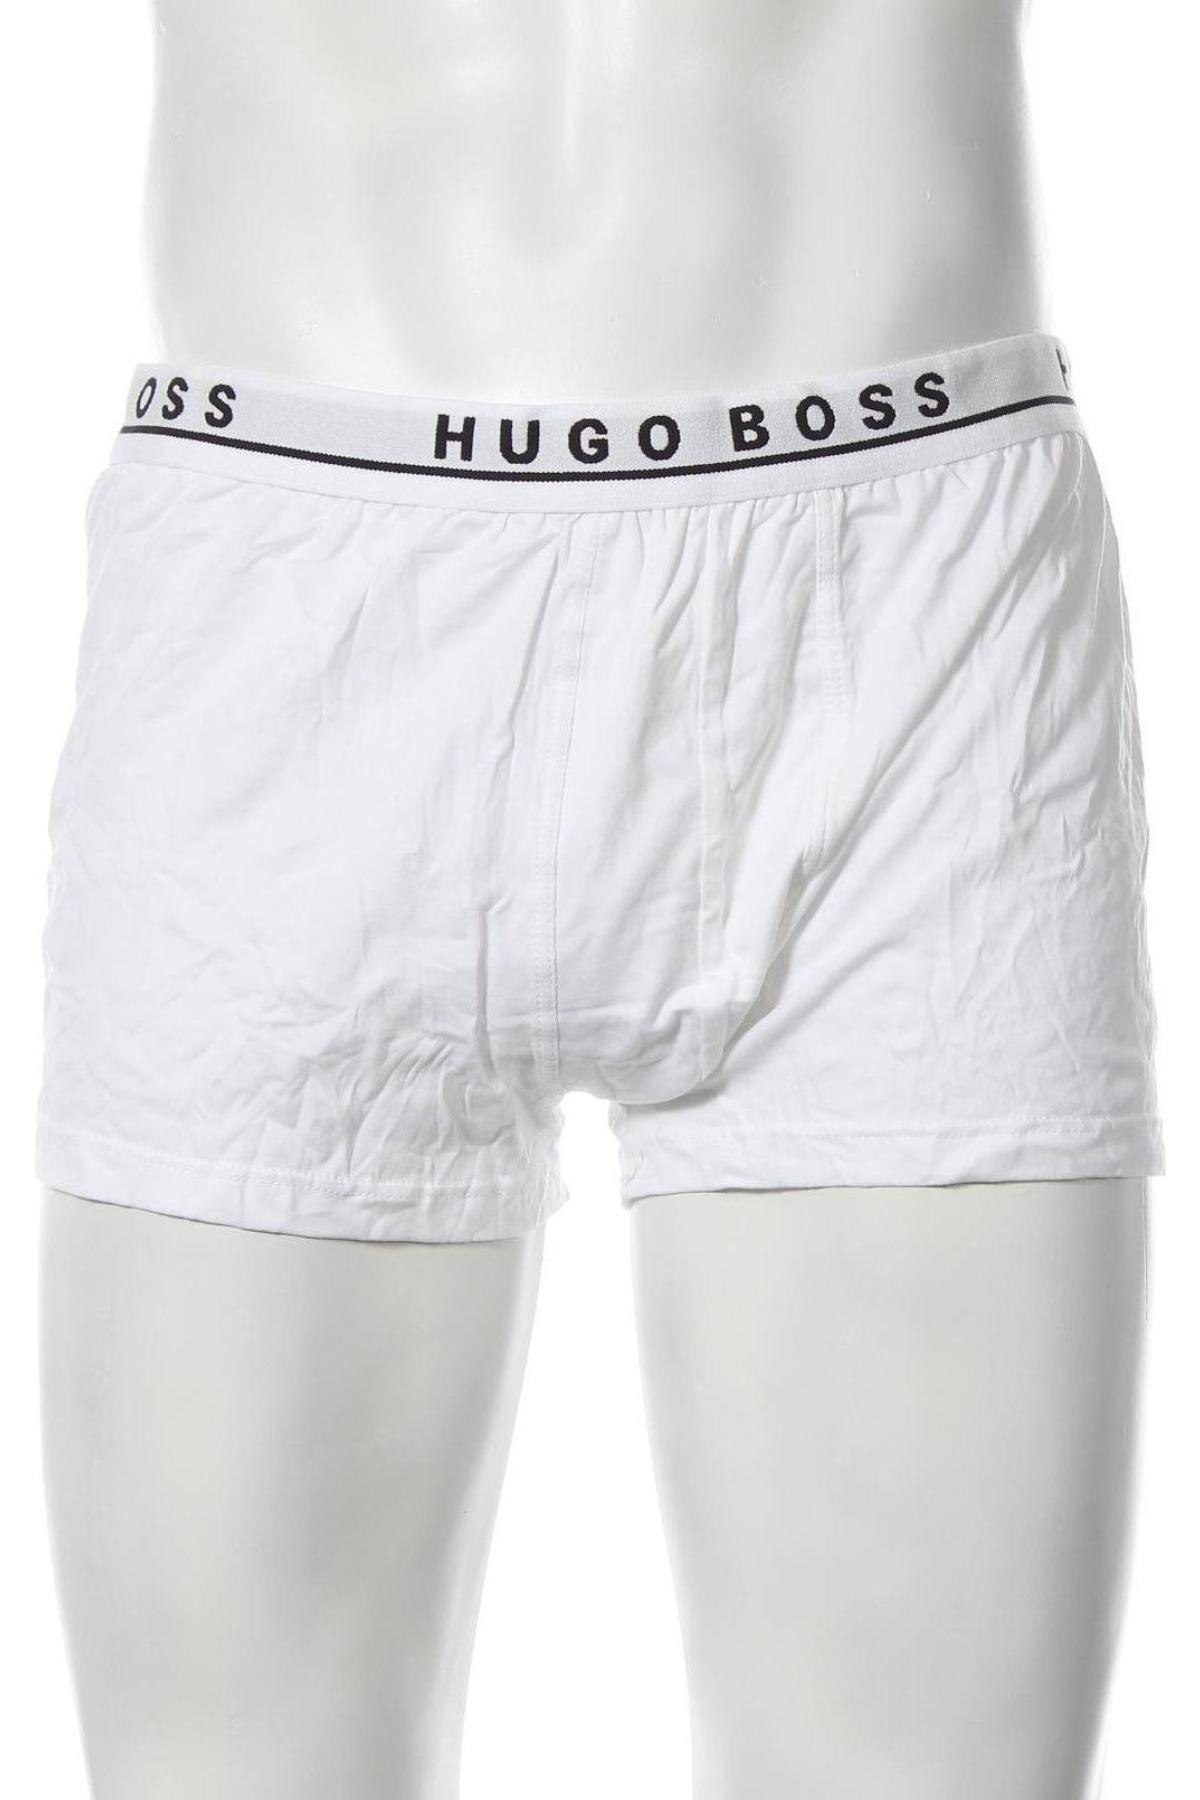 Ανδρικό σύνολο Hugo Boss, Μέγεθος XXL, Χρώμα Πολύχρωμο, 95% βαμβάκι, 5% ελαστάνη, Τιμή 49,87 €